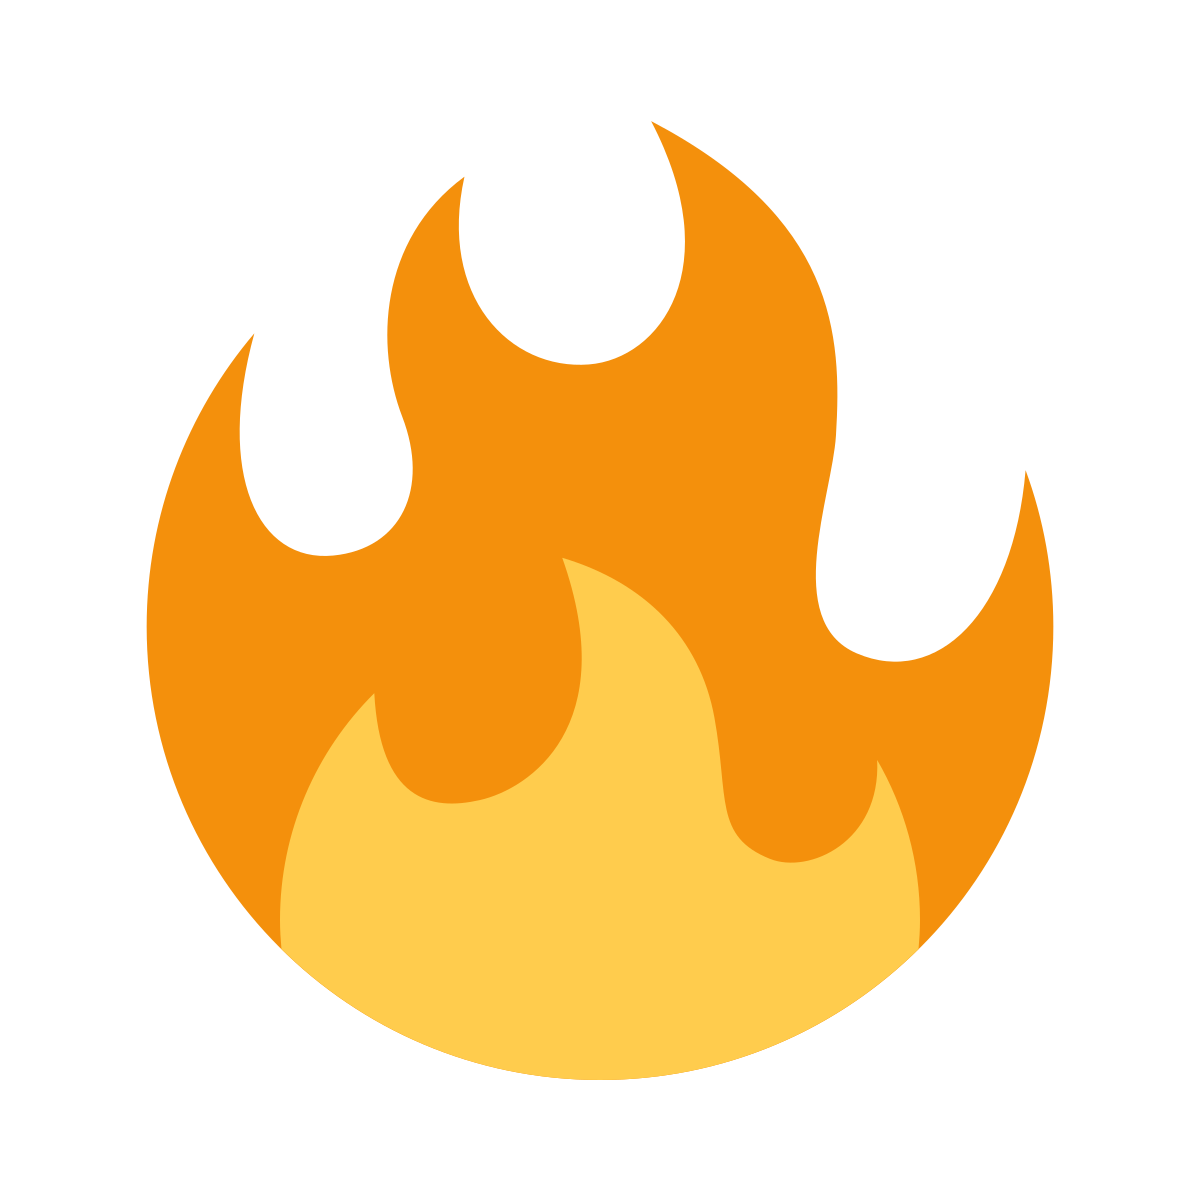 What does the FIREEEEEE emoji mean?